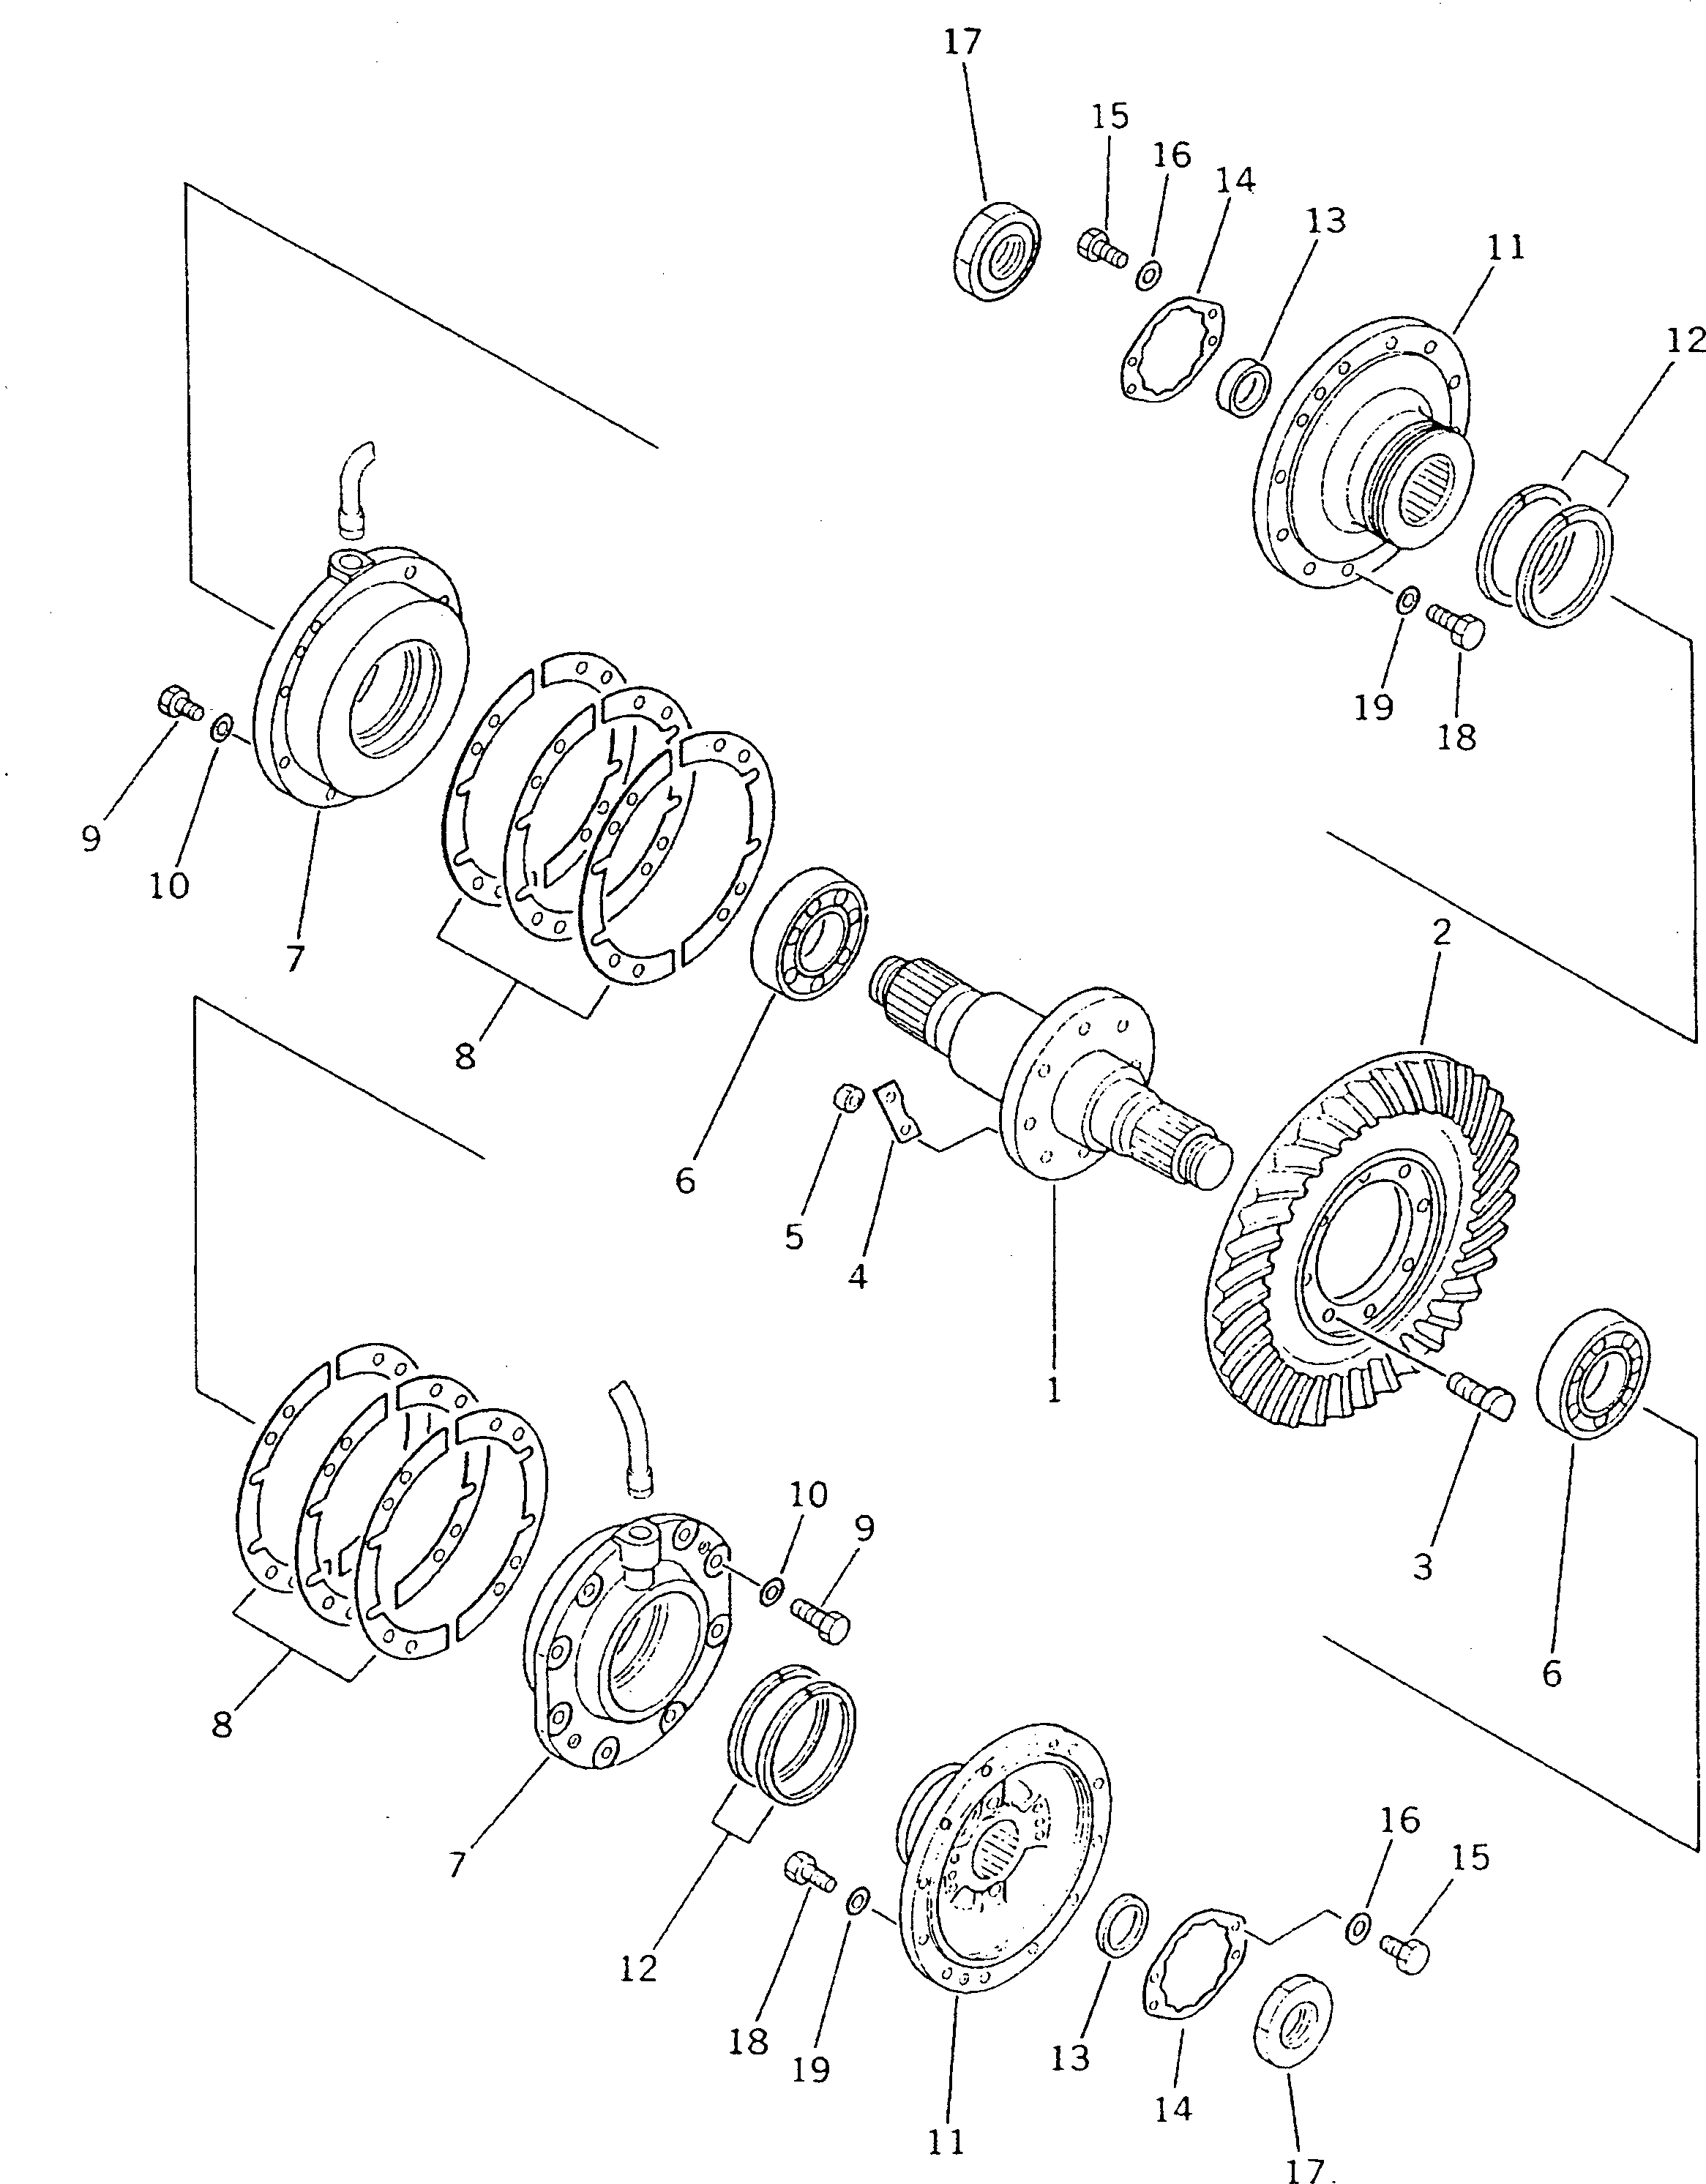 170. BEVEL GEAR AND SHAFT [2611] - Komatsu part D135A-2 S/N 10301-UP [d135a-2c]